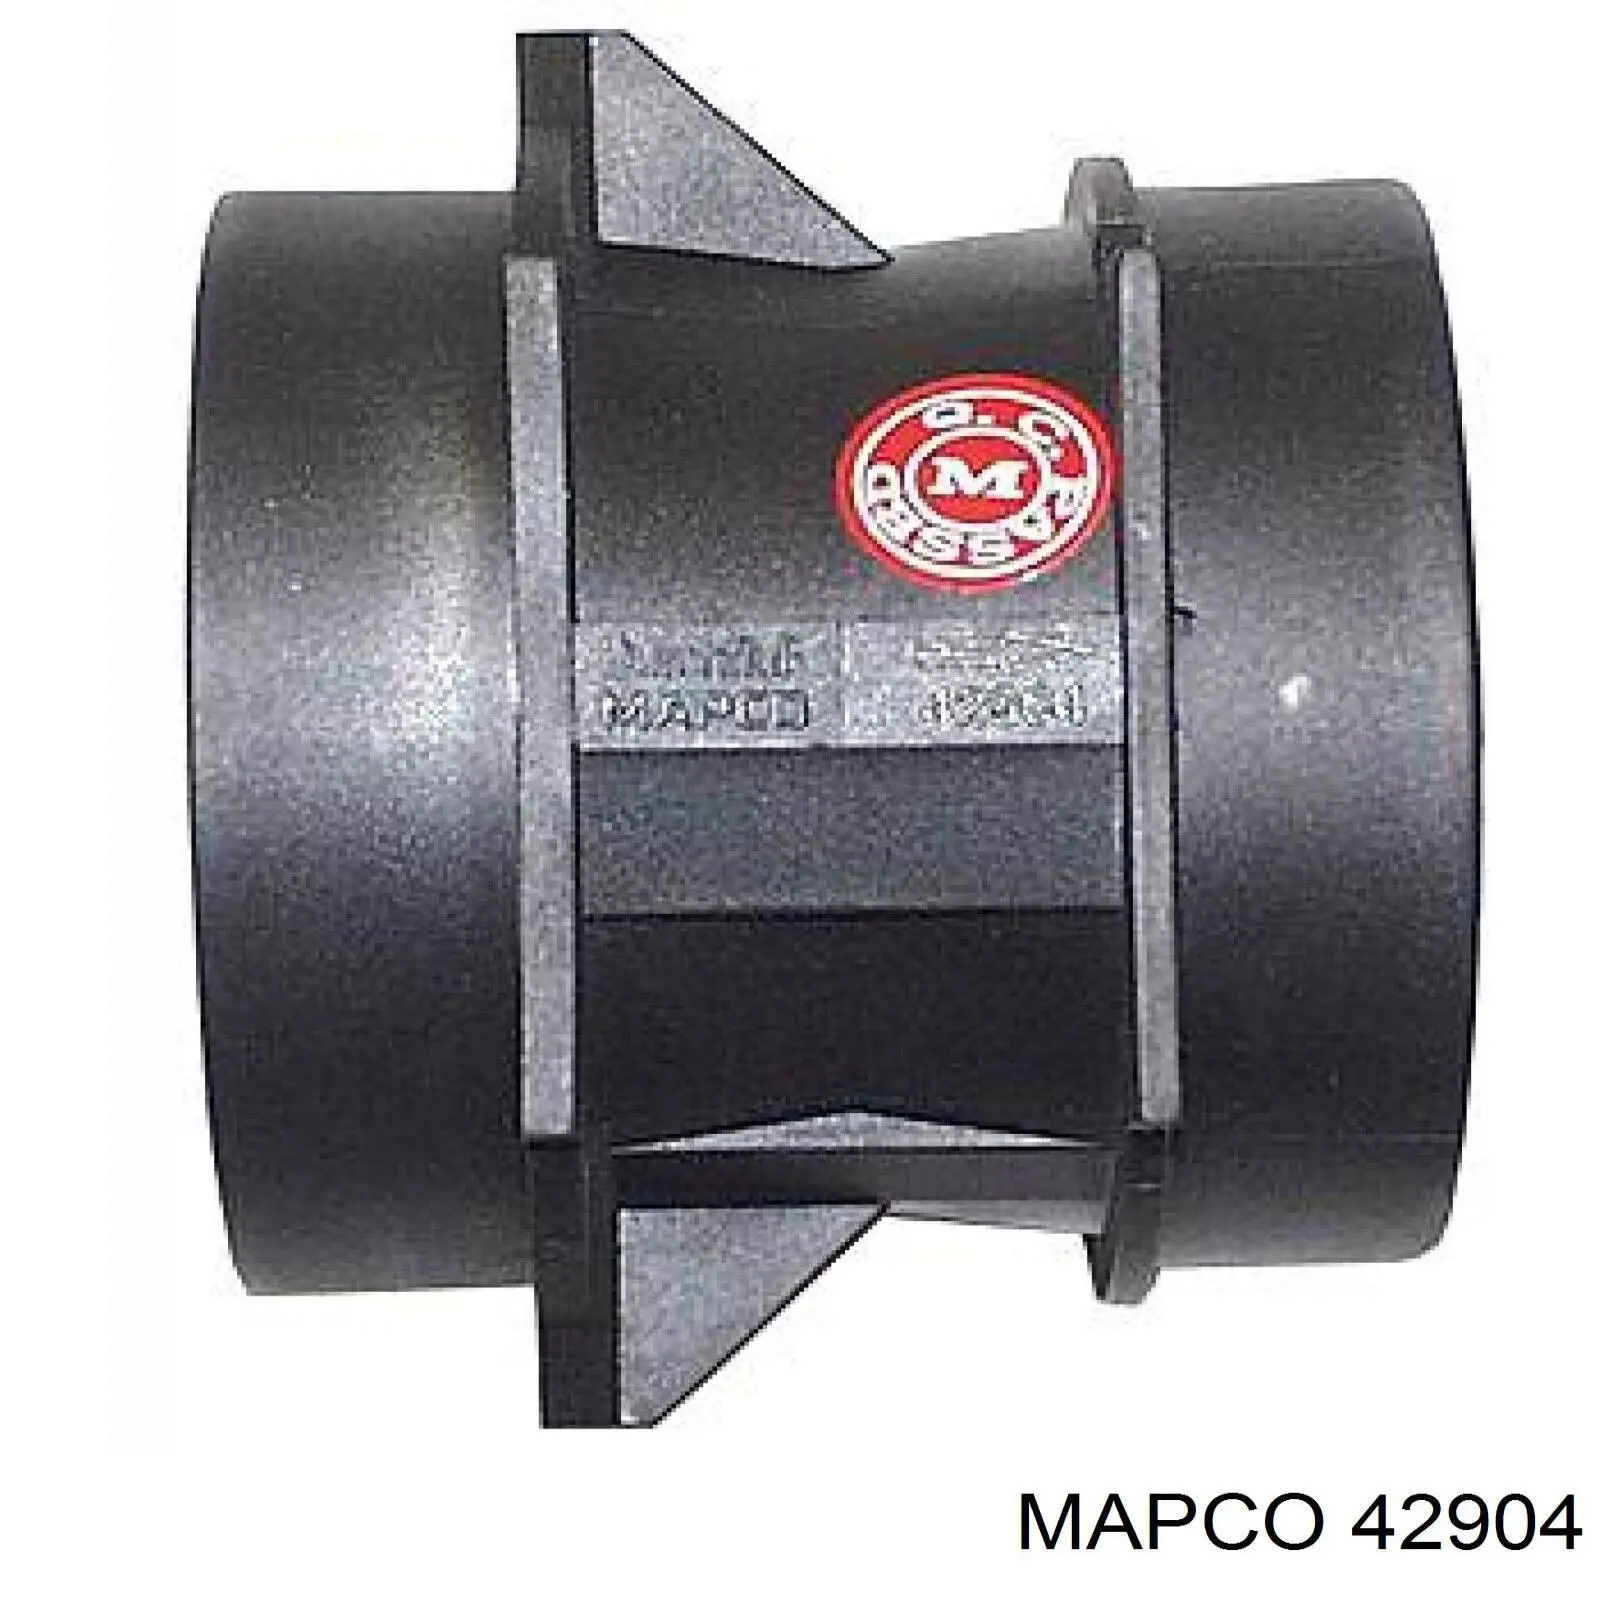 Sensor De Flujo De Aire/Medidor De Flujo (Flujo de Aire Masibo) 42904 Mapco